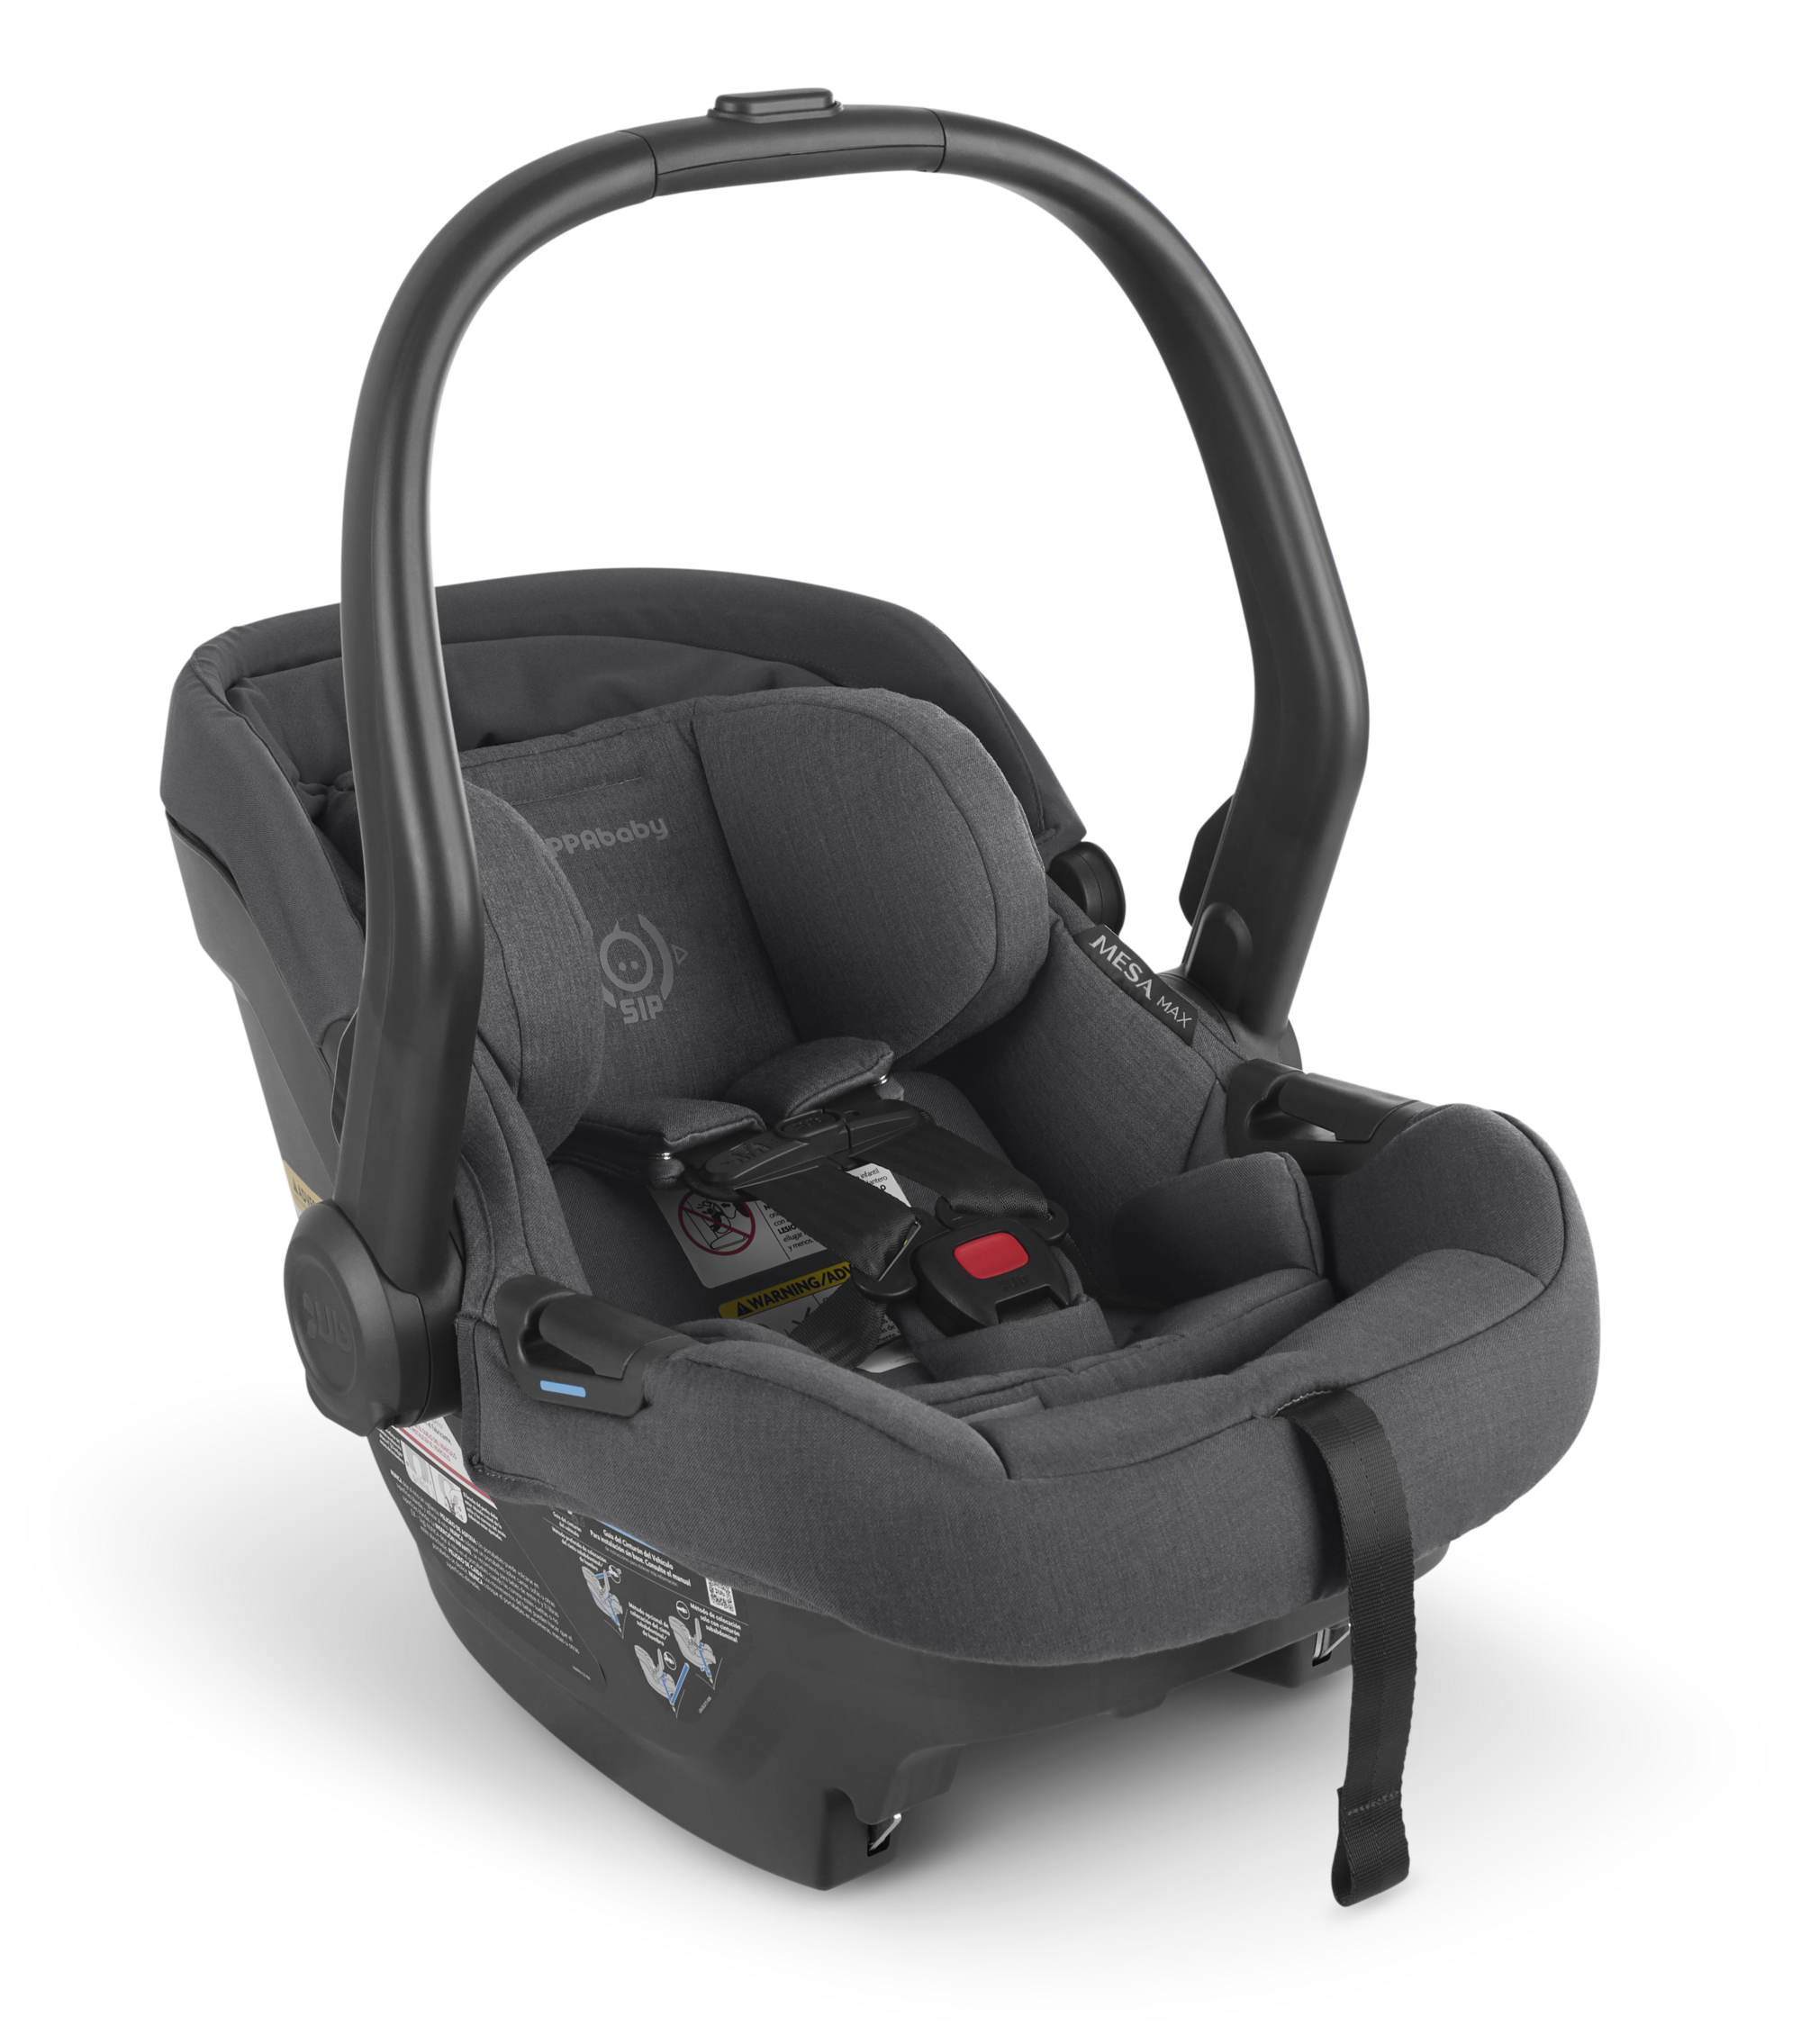 UPPAbaby MESA MAX Infant Car Seat - Greyson - 4